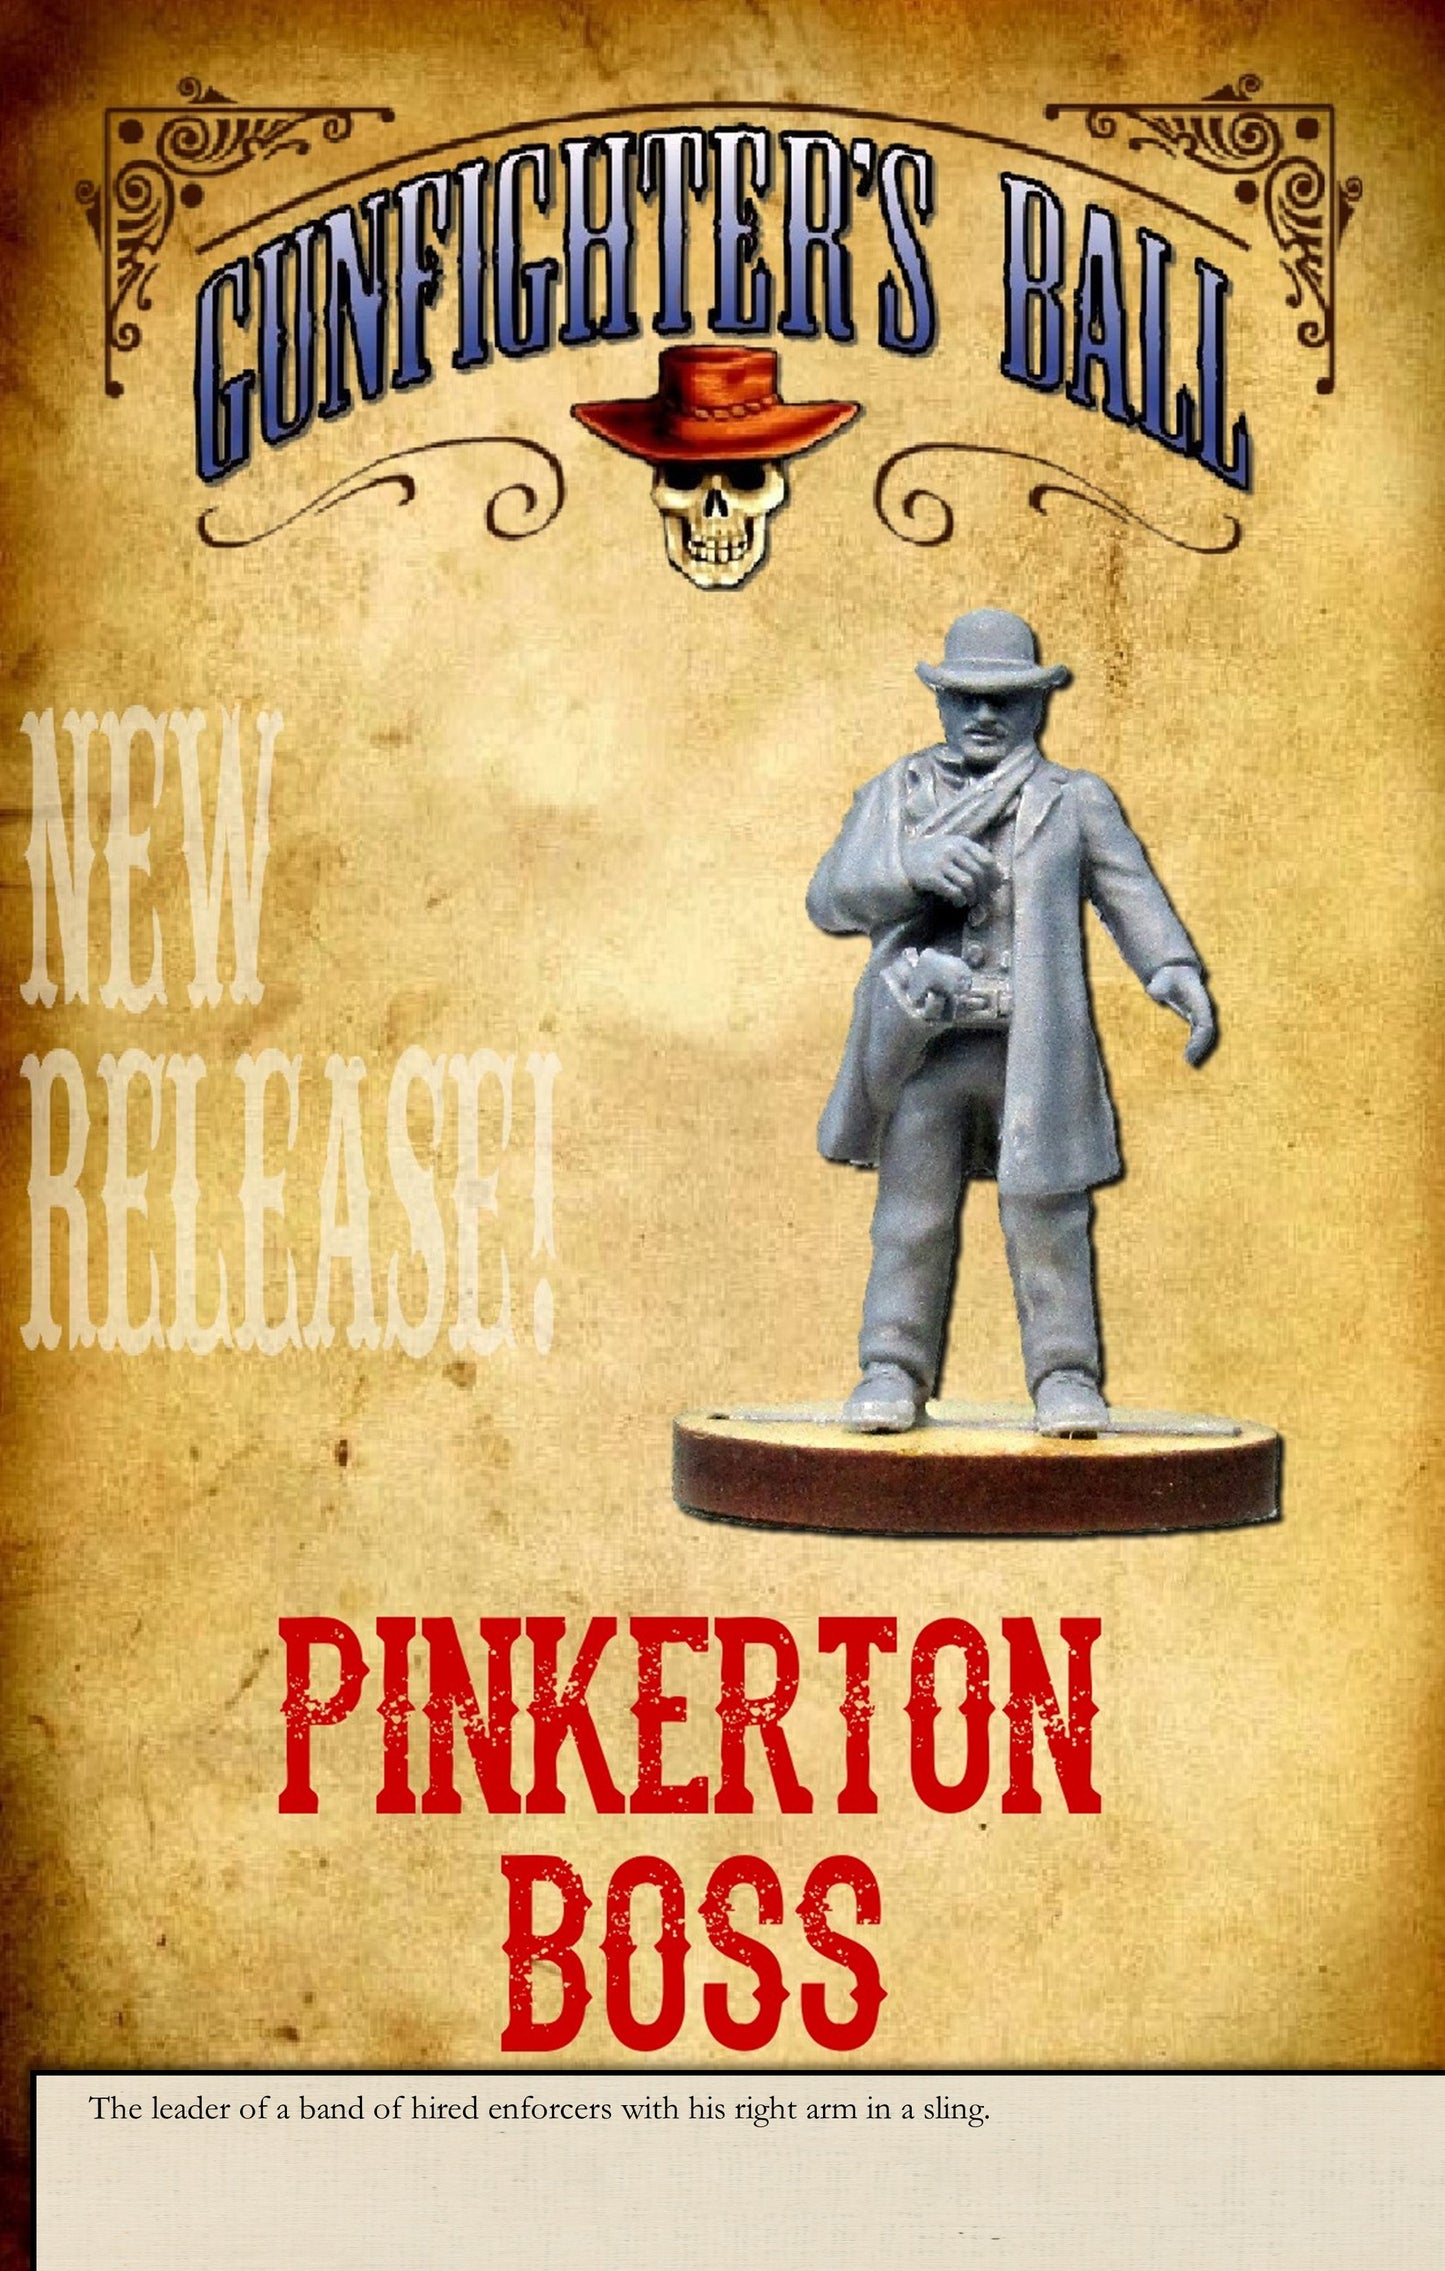 Pinkertons